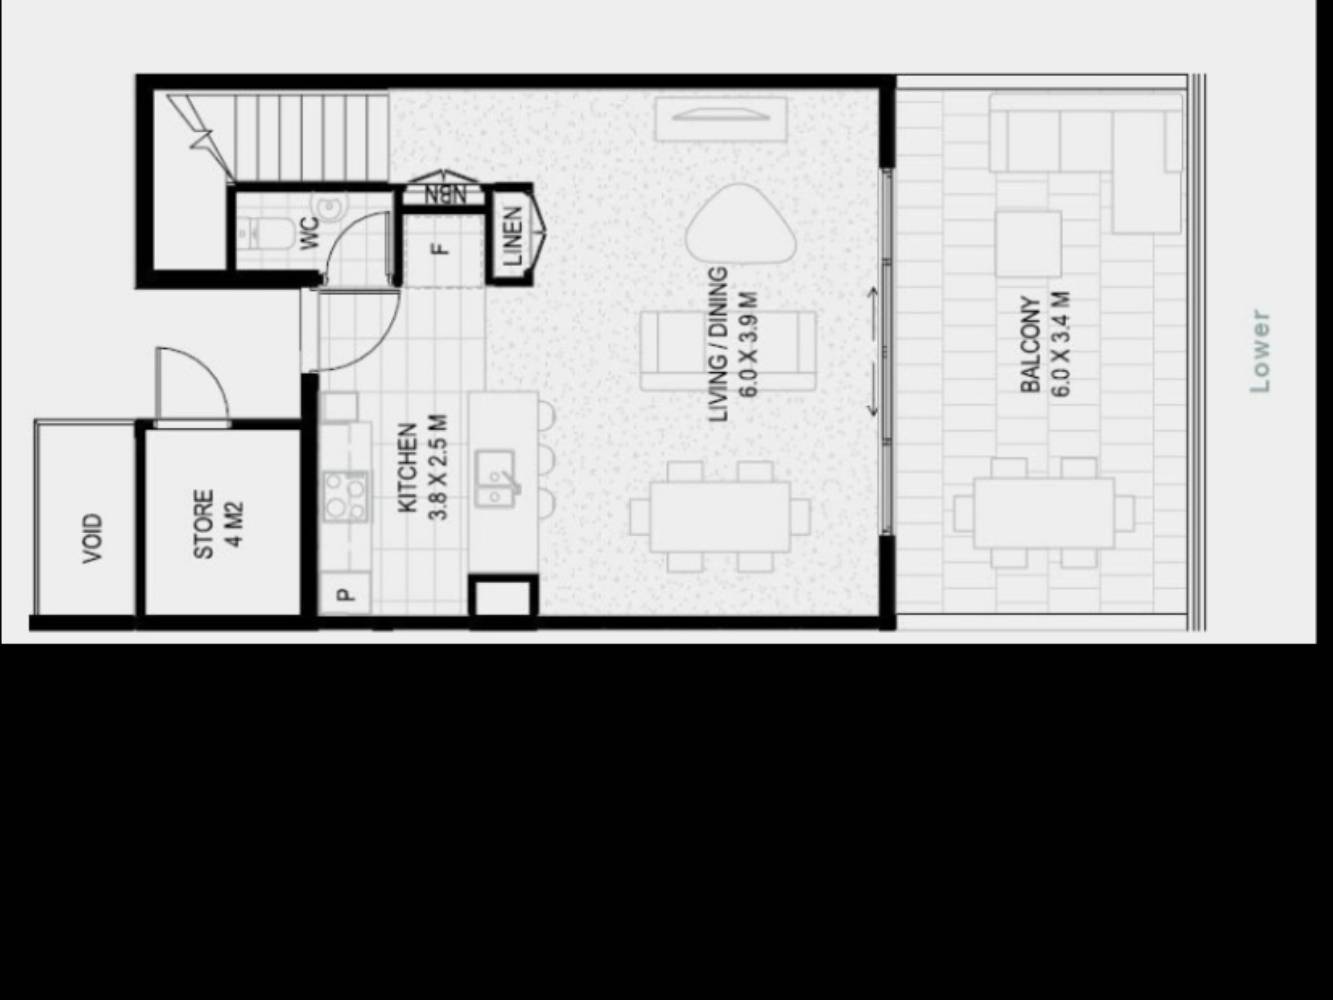 Floor plan (downstairs)